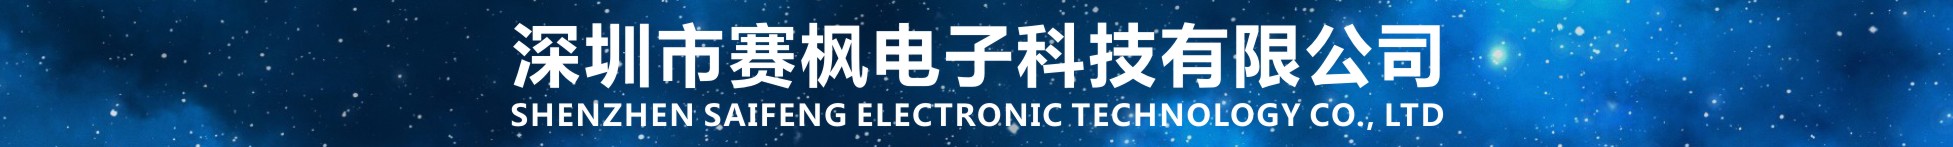 深圳市赛枫电子科技有限公司